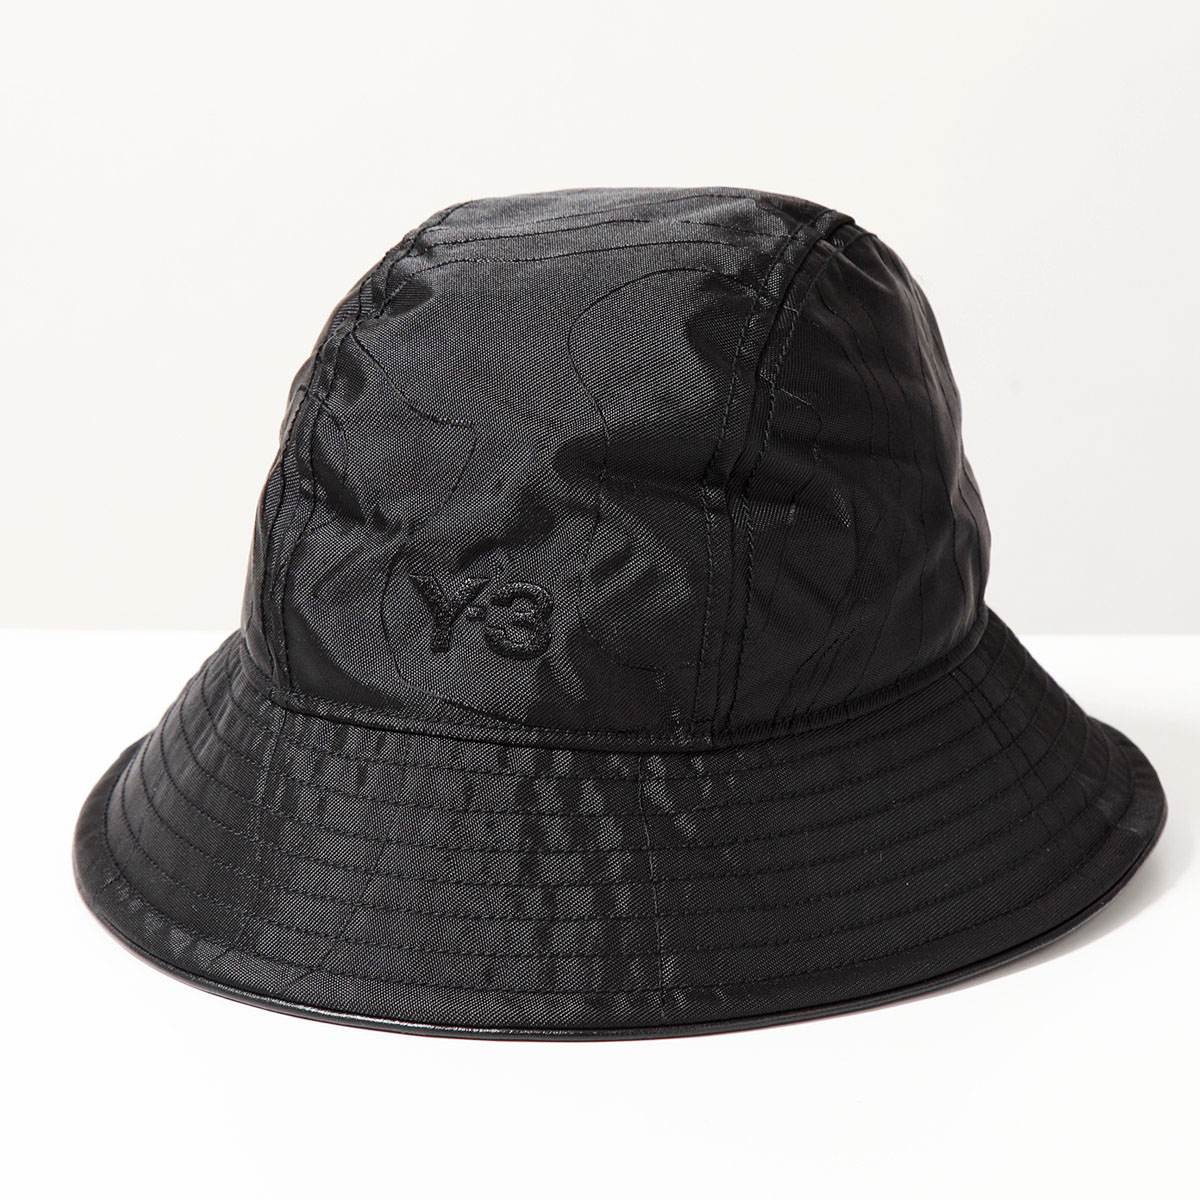 Y-3 ワイスリー バケットハット IS5226 レディース ナイロン ロゴ刺繍 帽子 BLACK